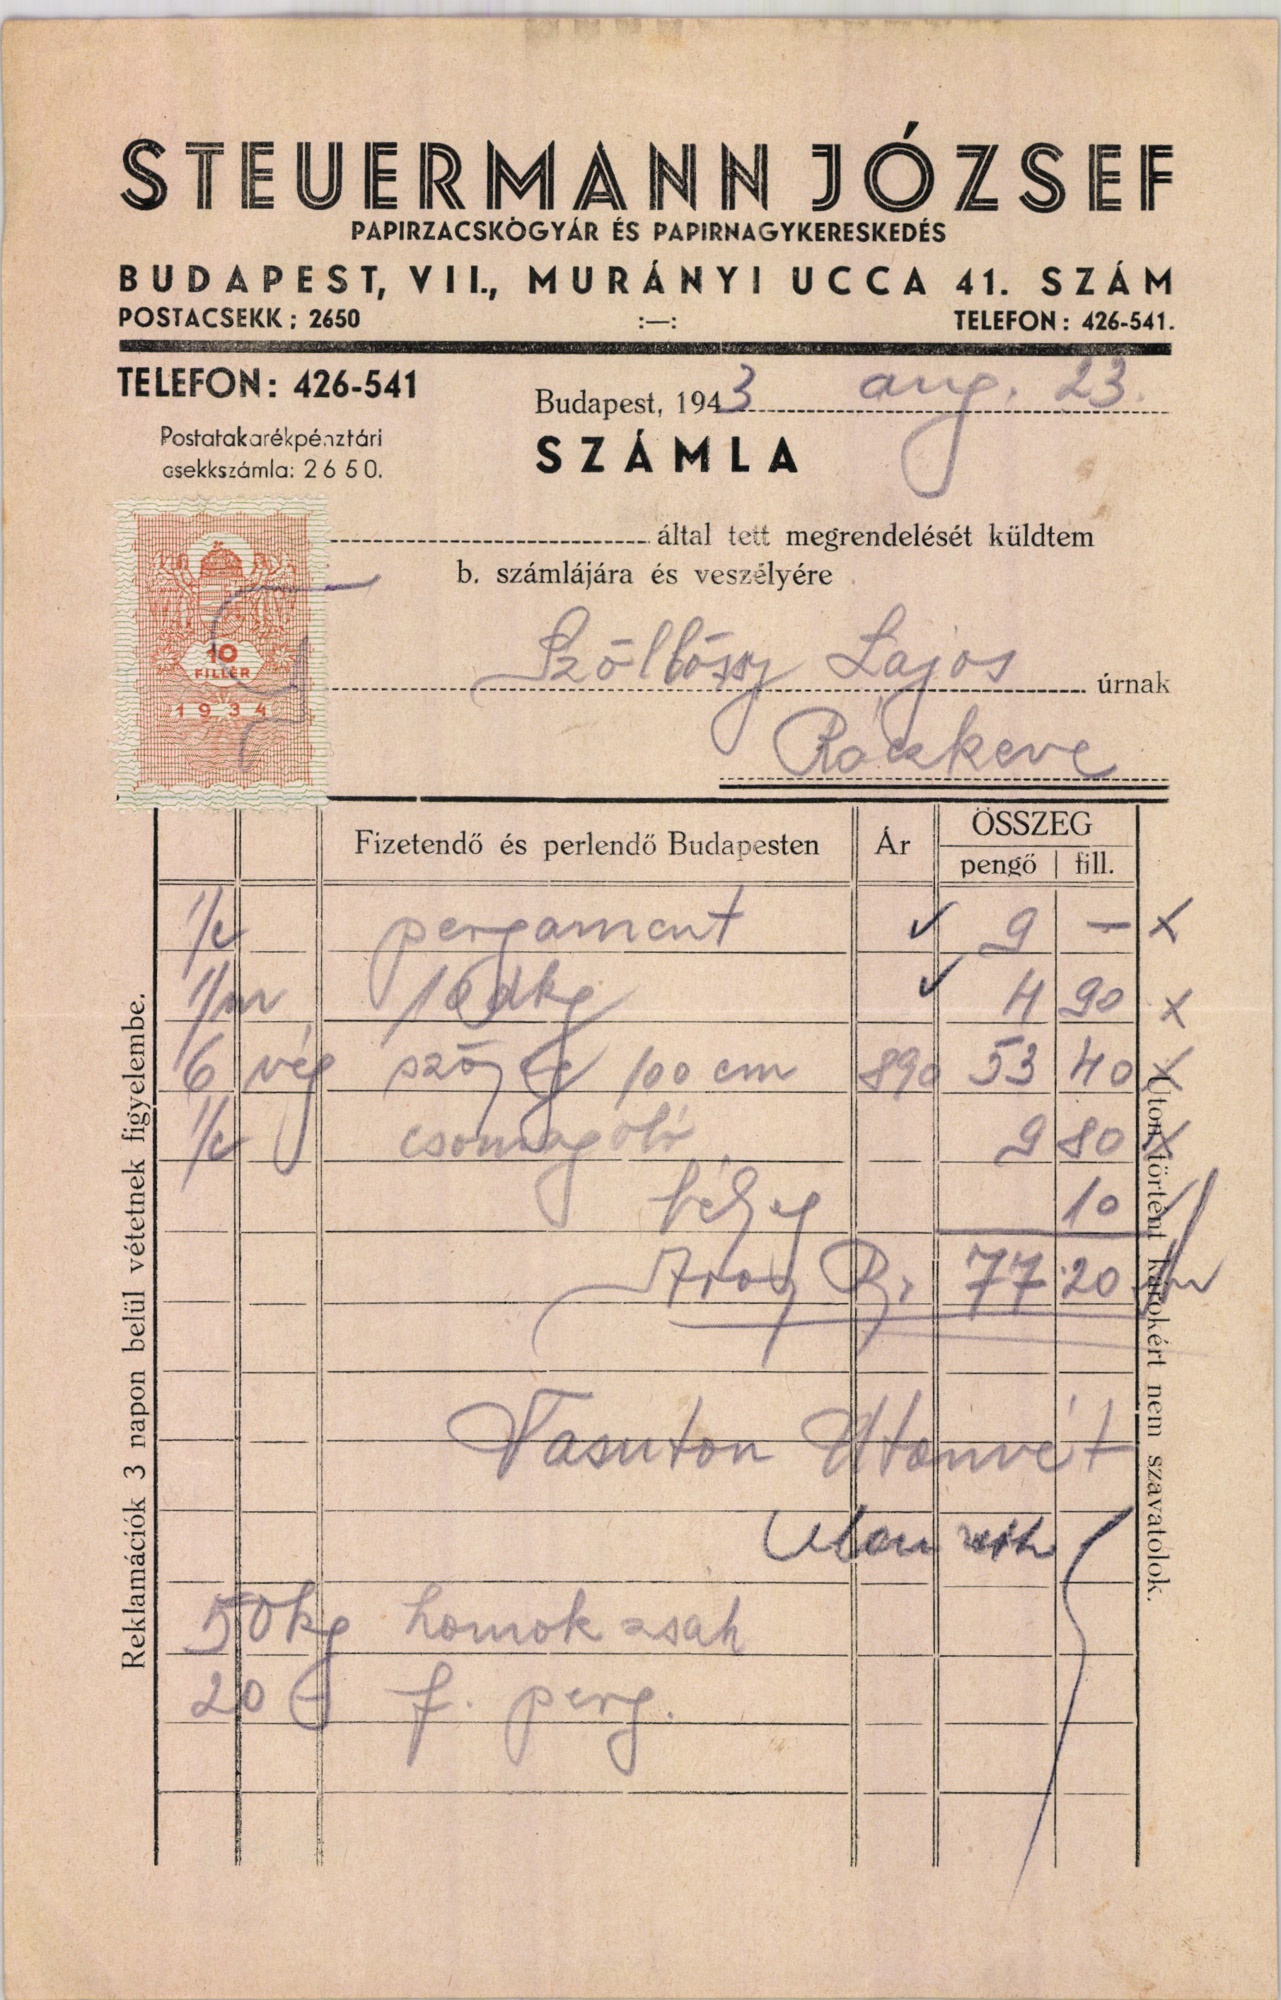 Steuermann József papírzacskógyár és papírárunagykereskedés (Magyar Kereskedelmi és Vendéglátóipari Múzeum CC BY-NC-SA)